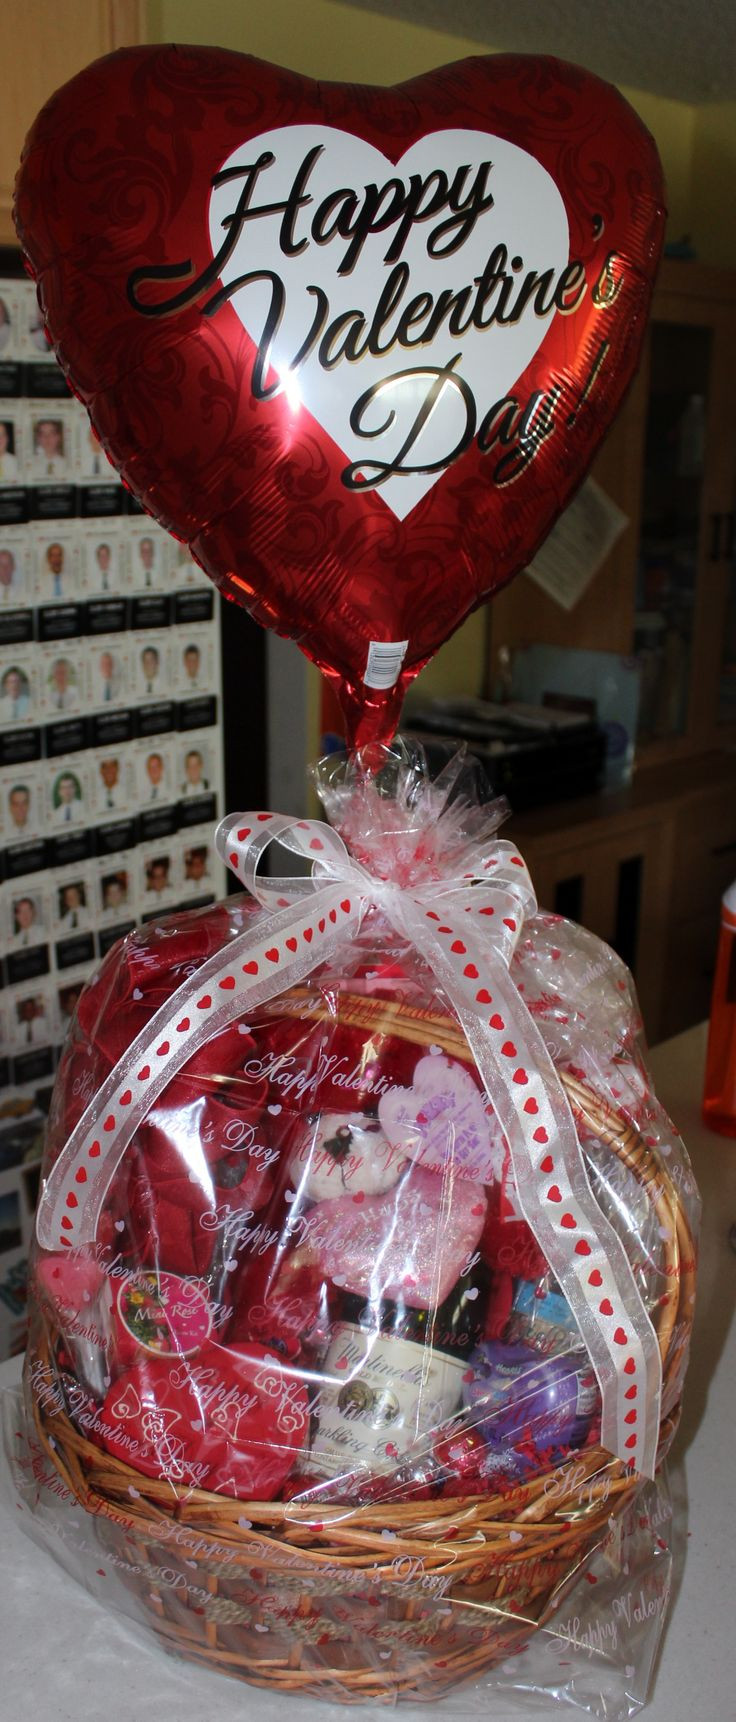 Valentines Gift Baskets Ideas
 Best 25 Valentine t baskets ideas on Pinterest